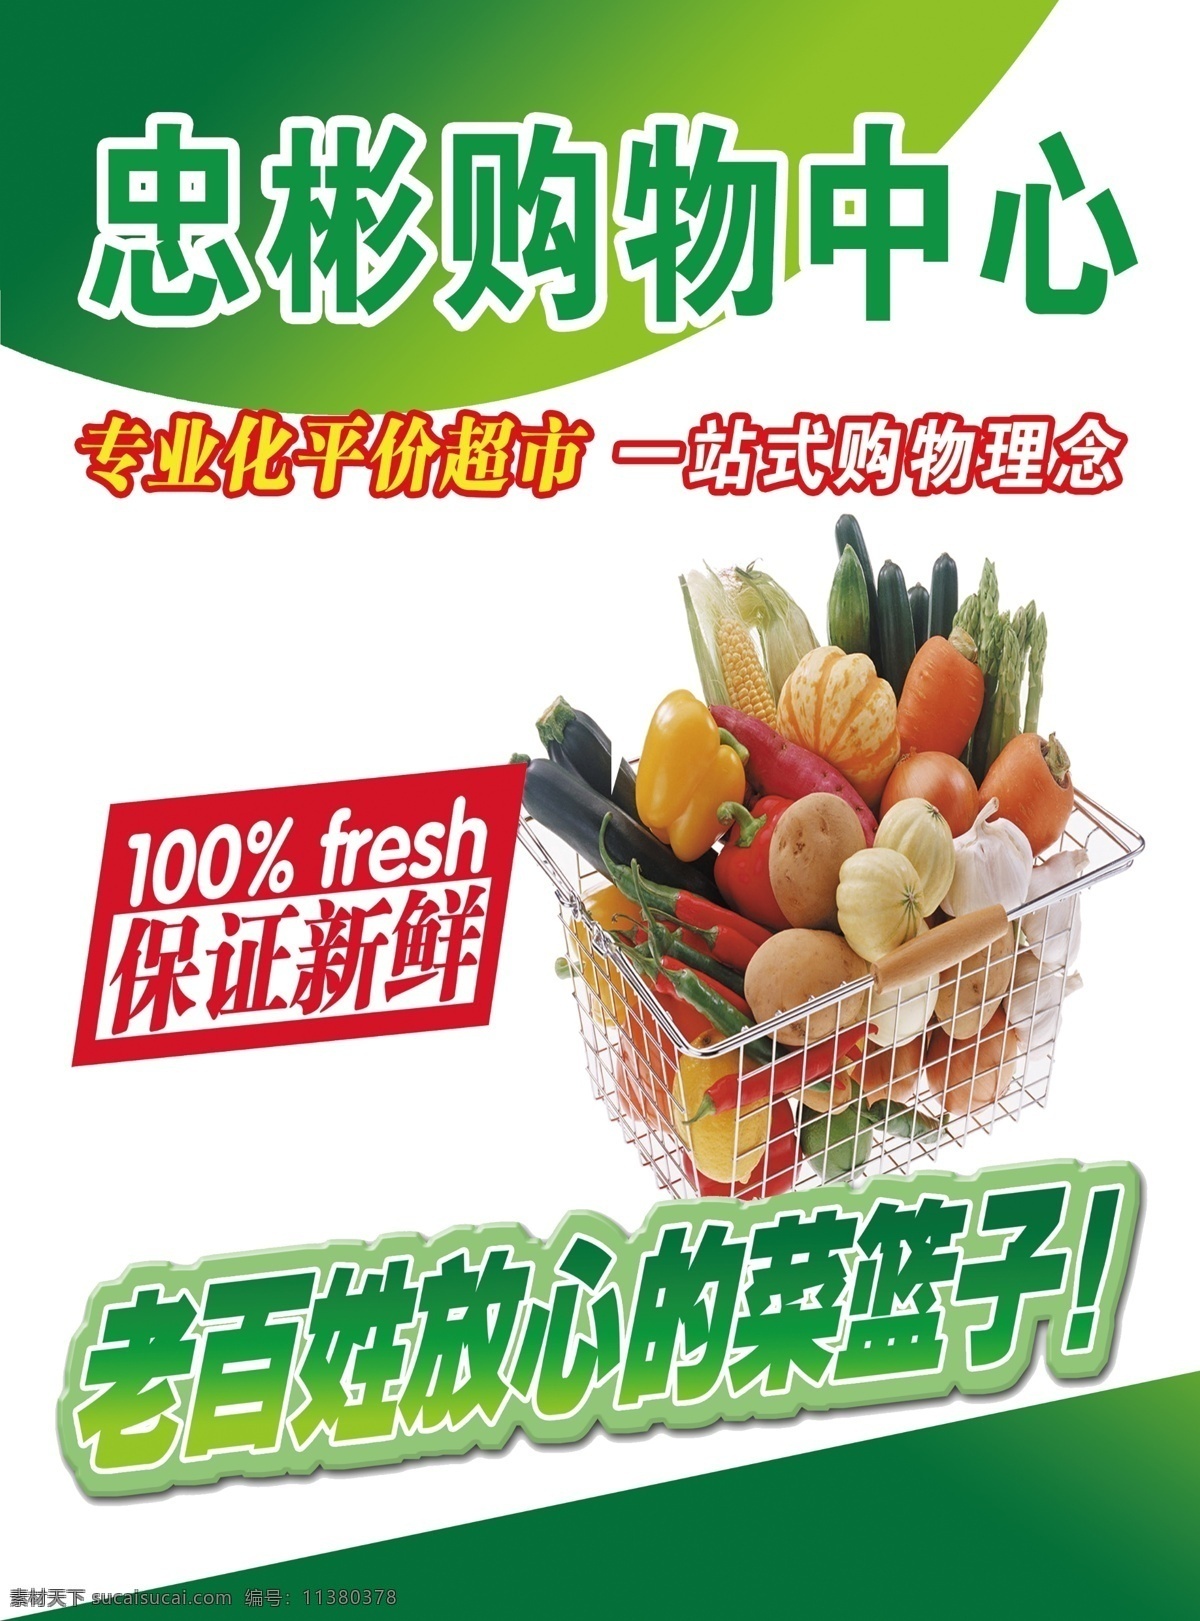 超市形象 菜蓝子 保证新鲜 展板 绿色块 蔬菜 分层